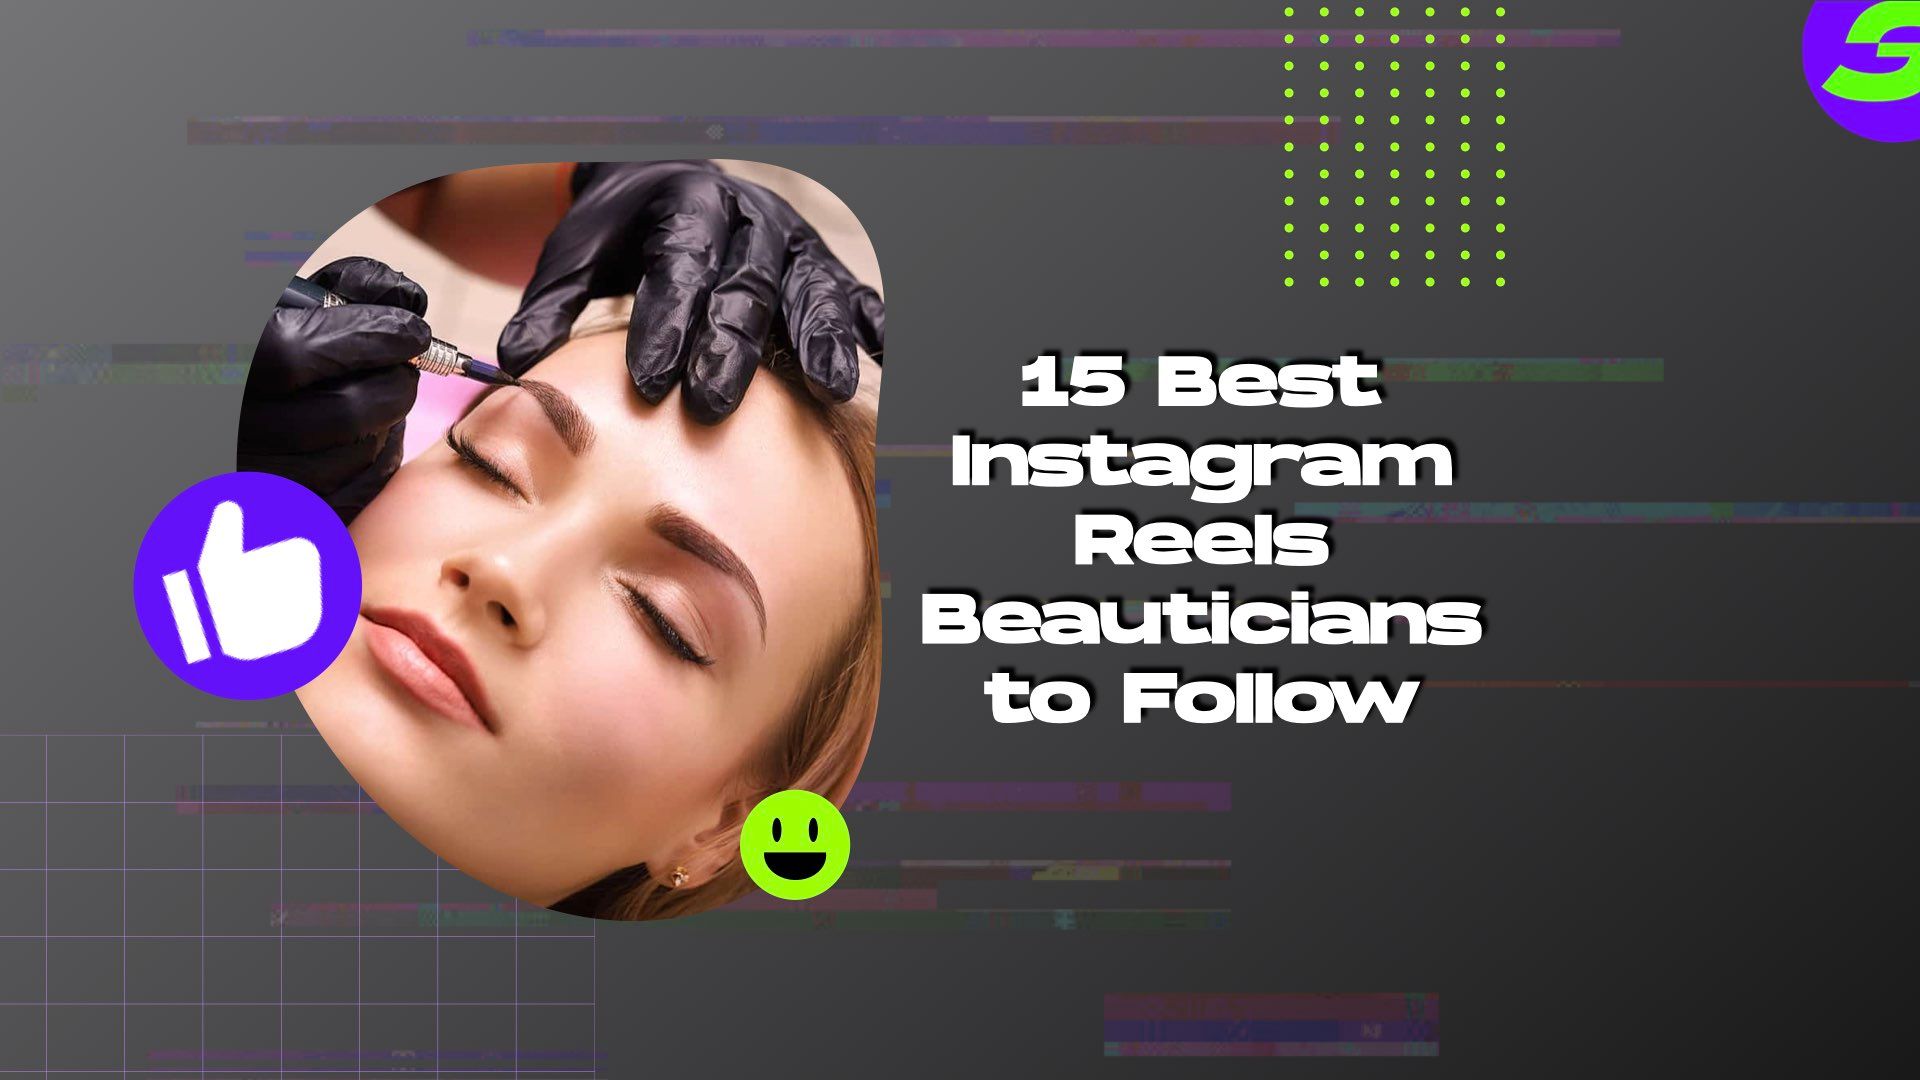 13 Best Instagram Reels Beauticians to Follow